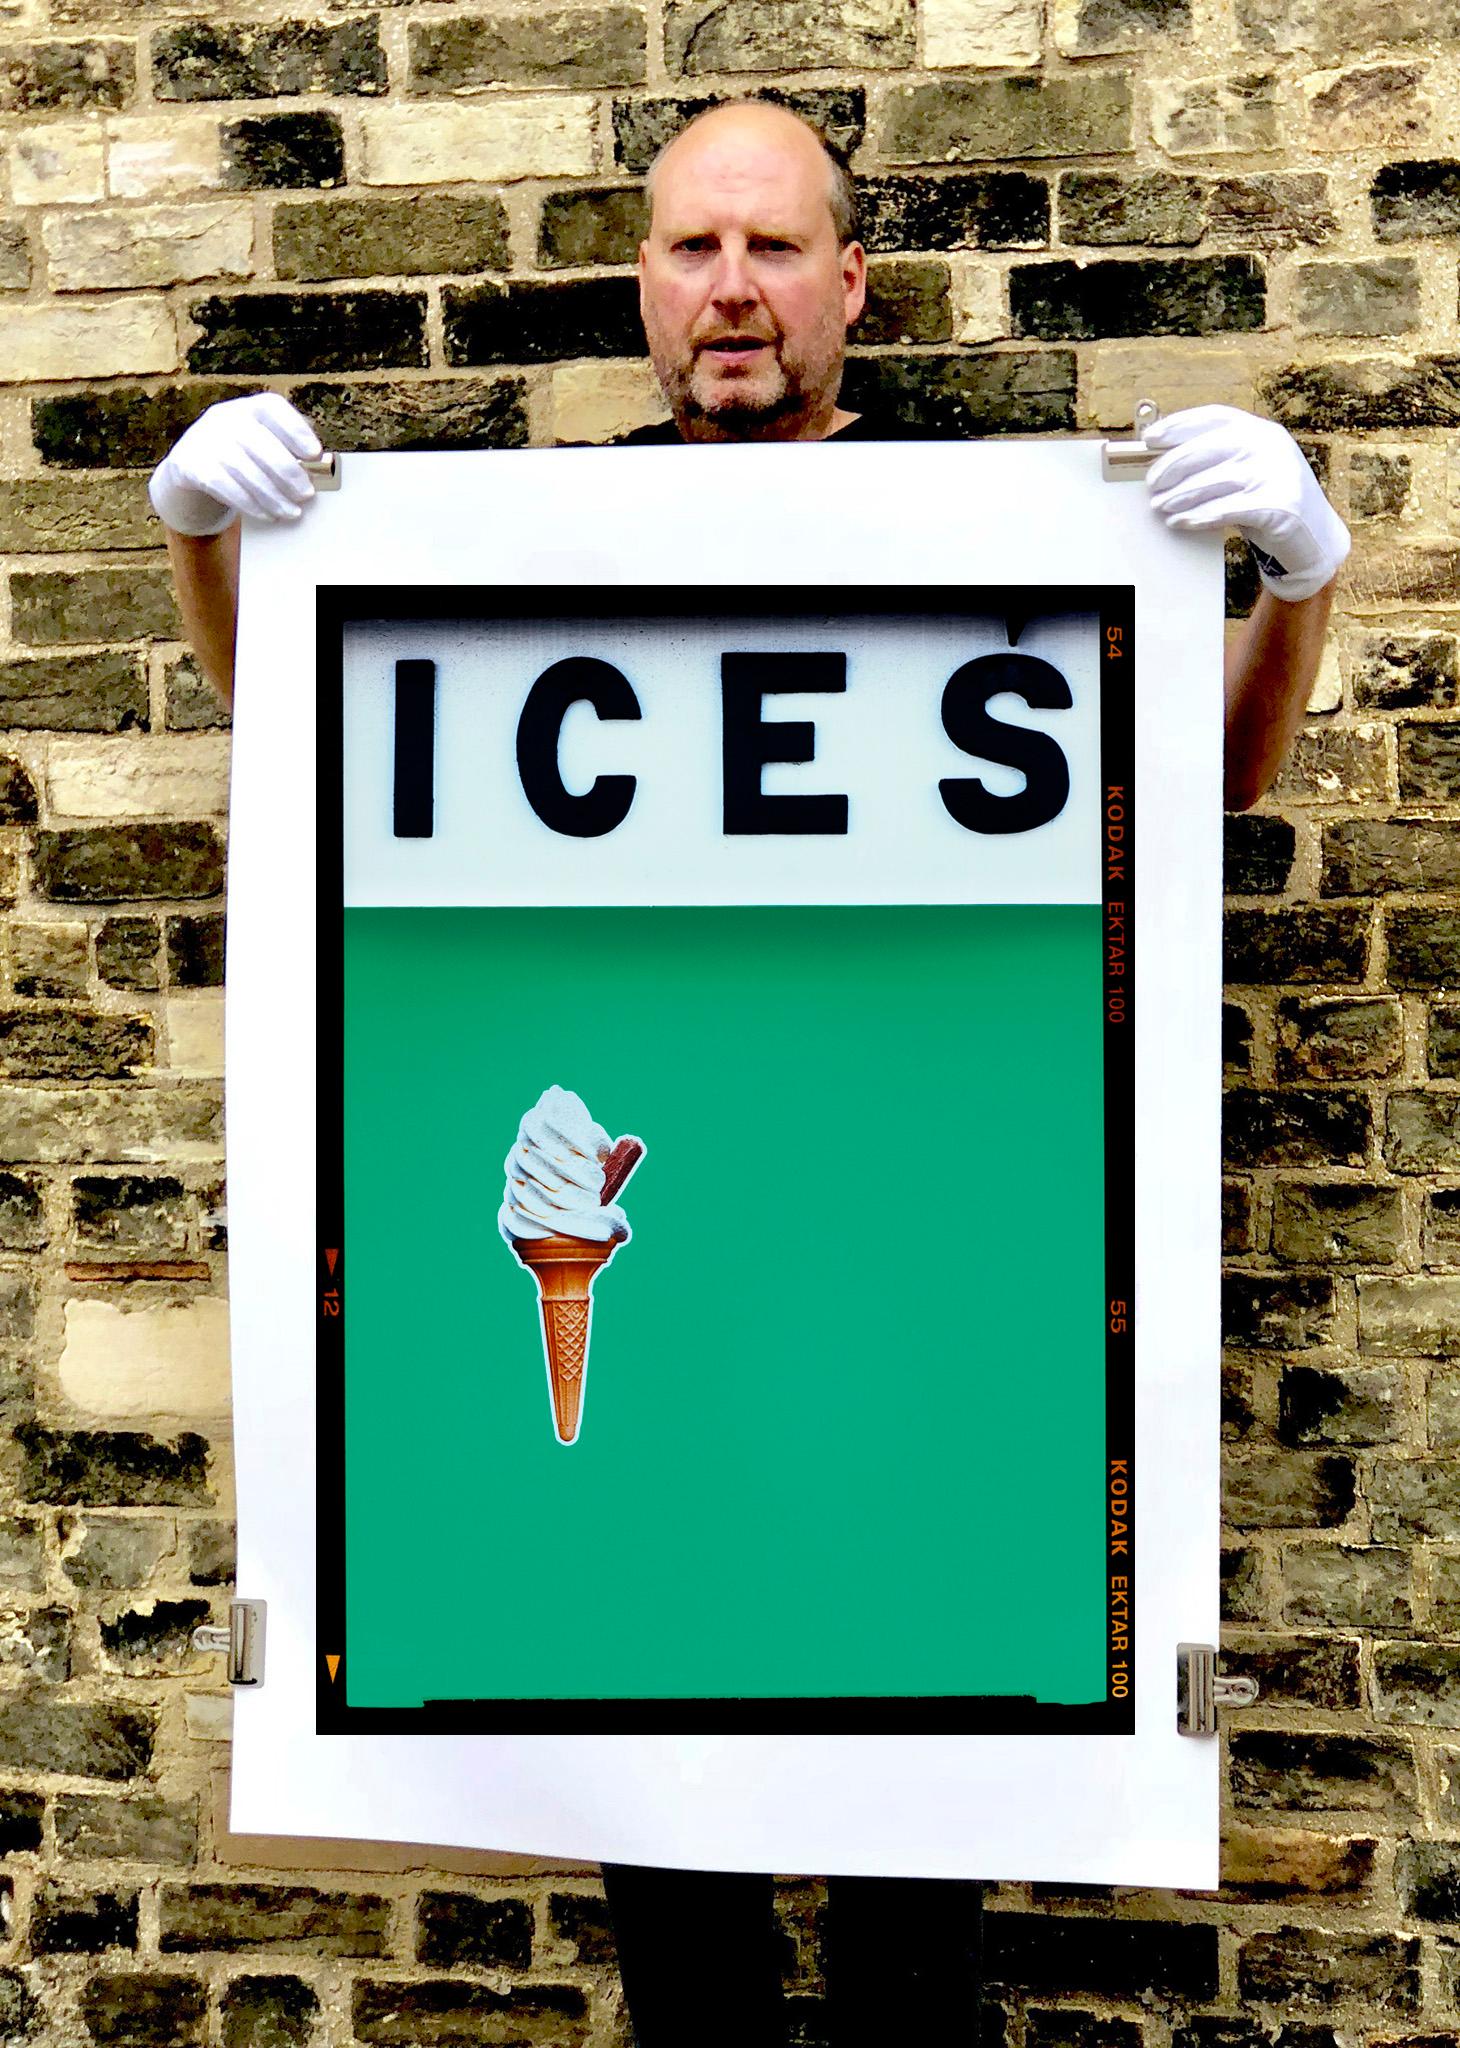 ICES (Viridian Green), Bexhill-on-Sea – britische Farbfotografie am Meer – Print von Richard Heeps